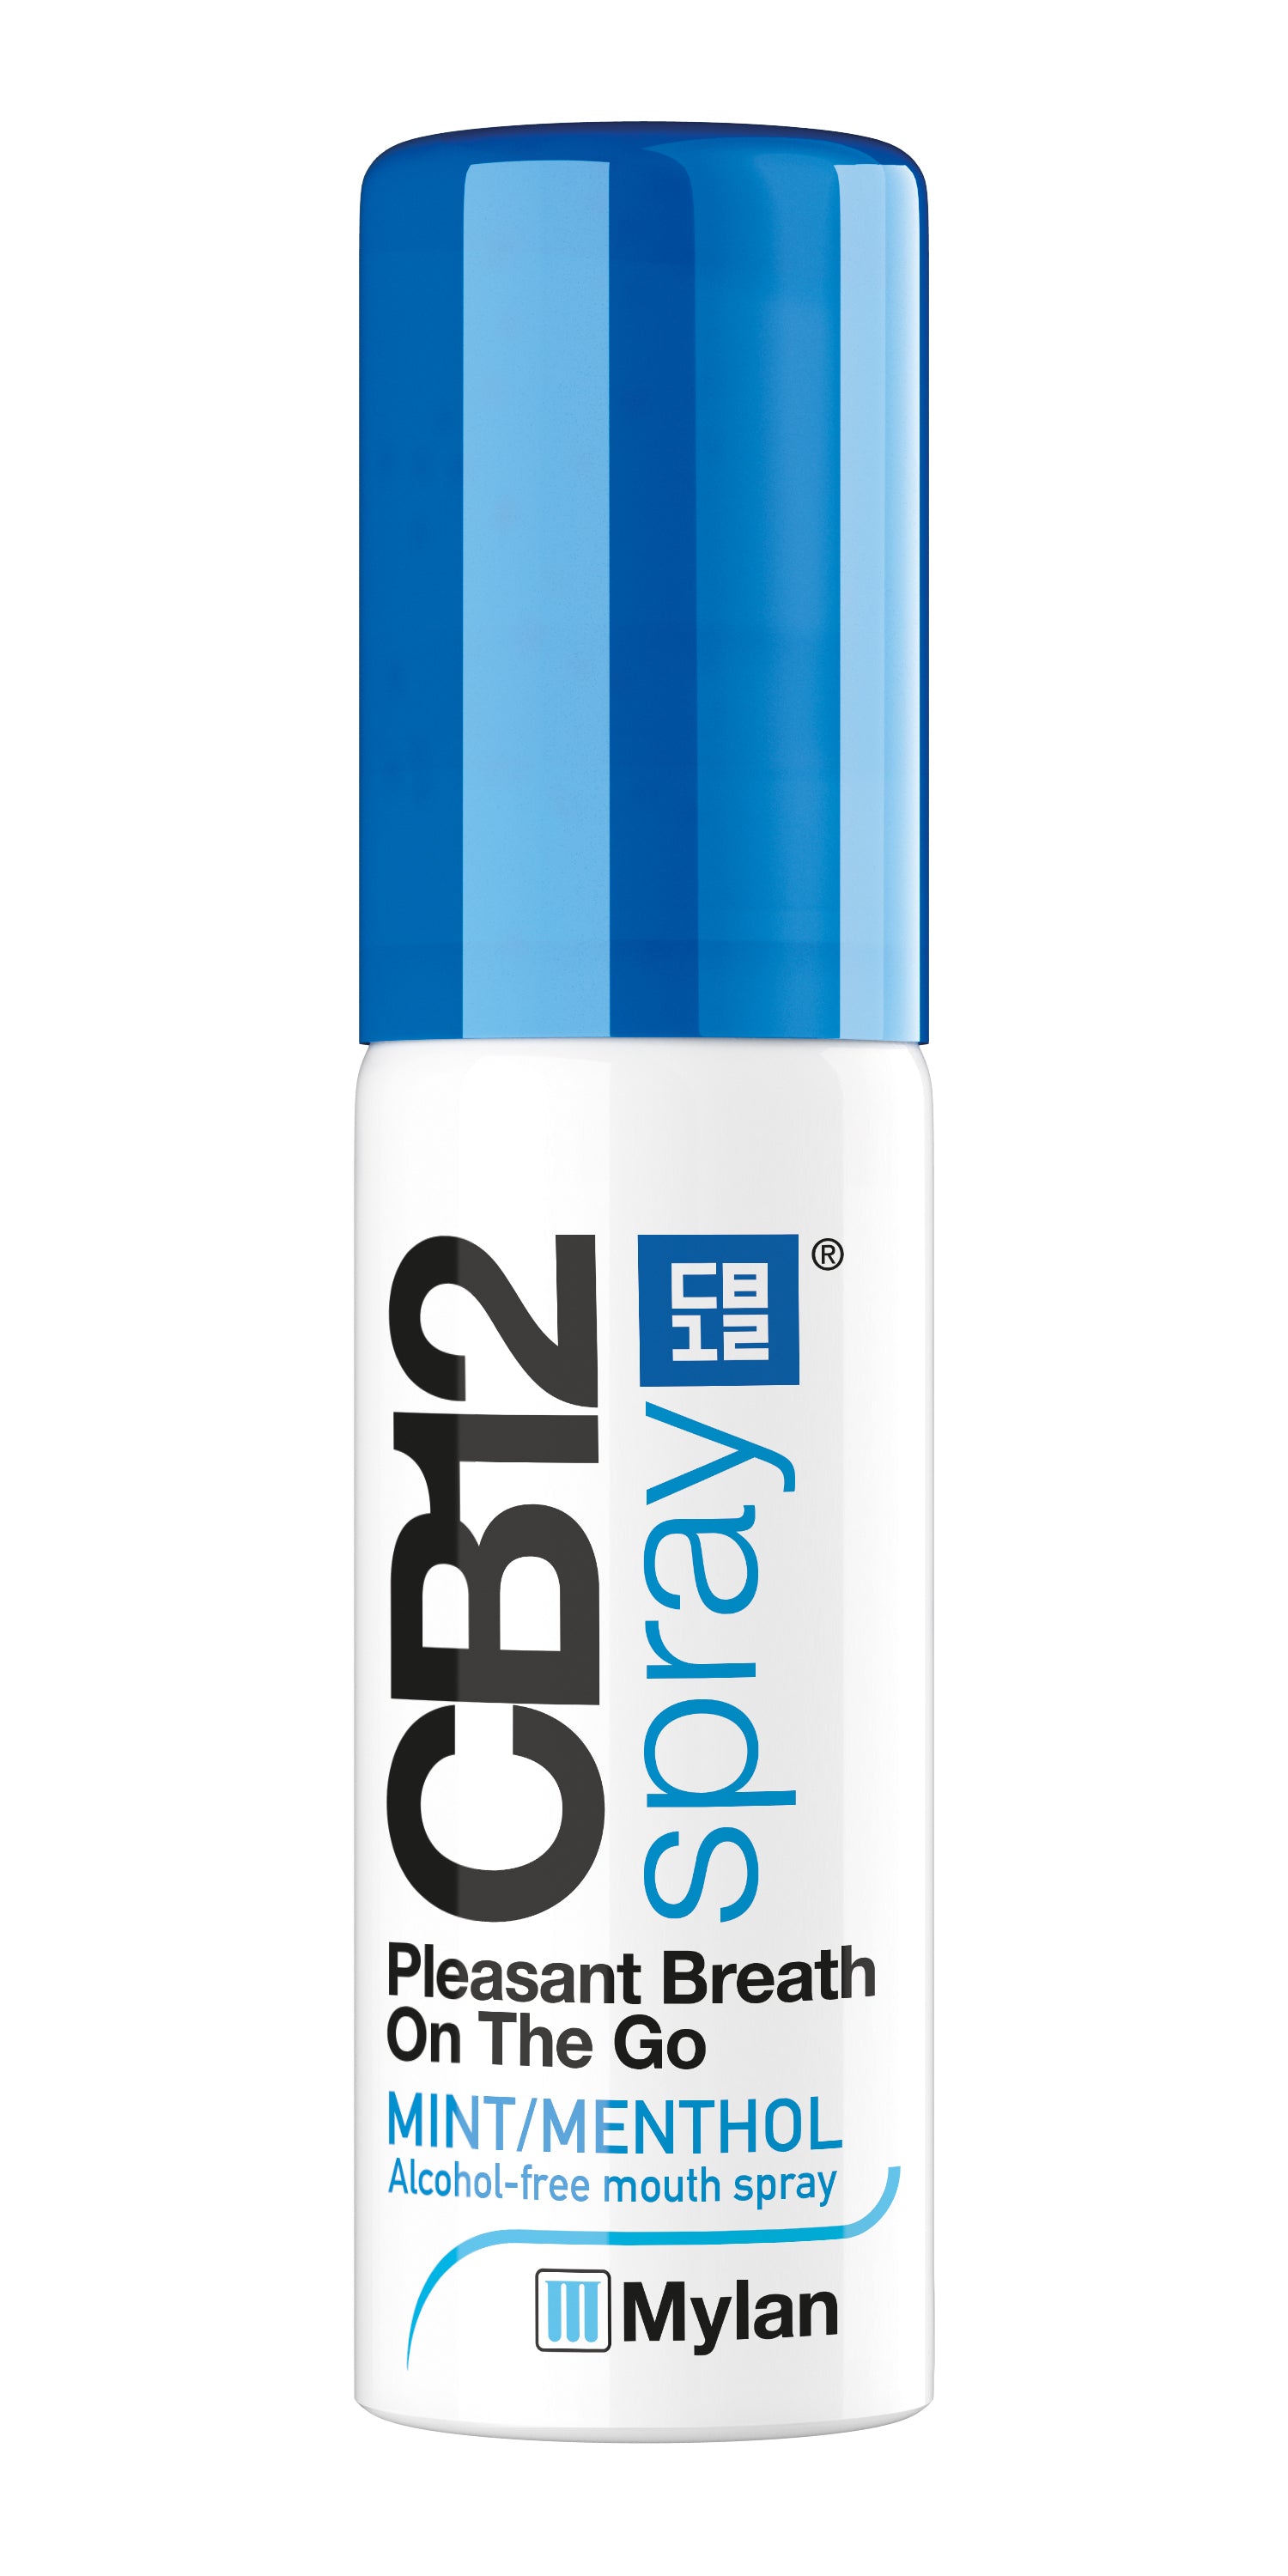 CB12 Spray, Bad breath, Leahys pharmacy 